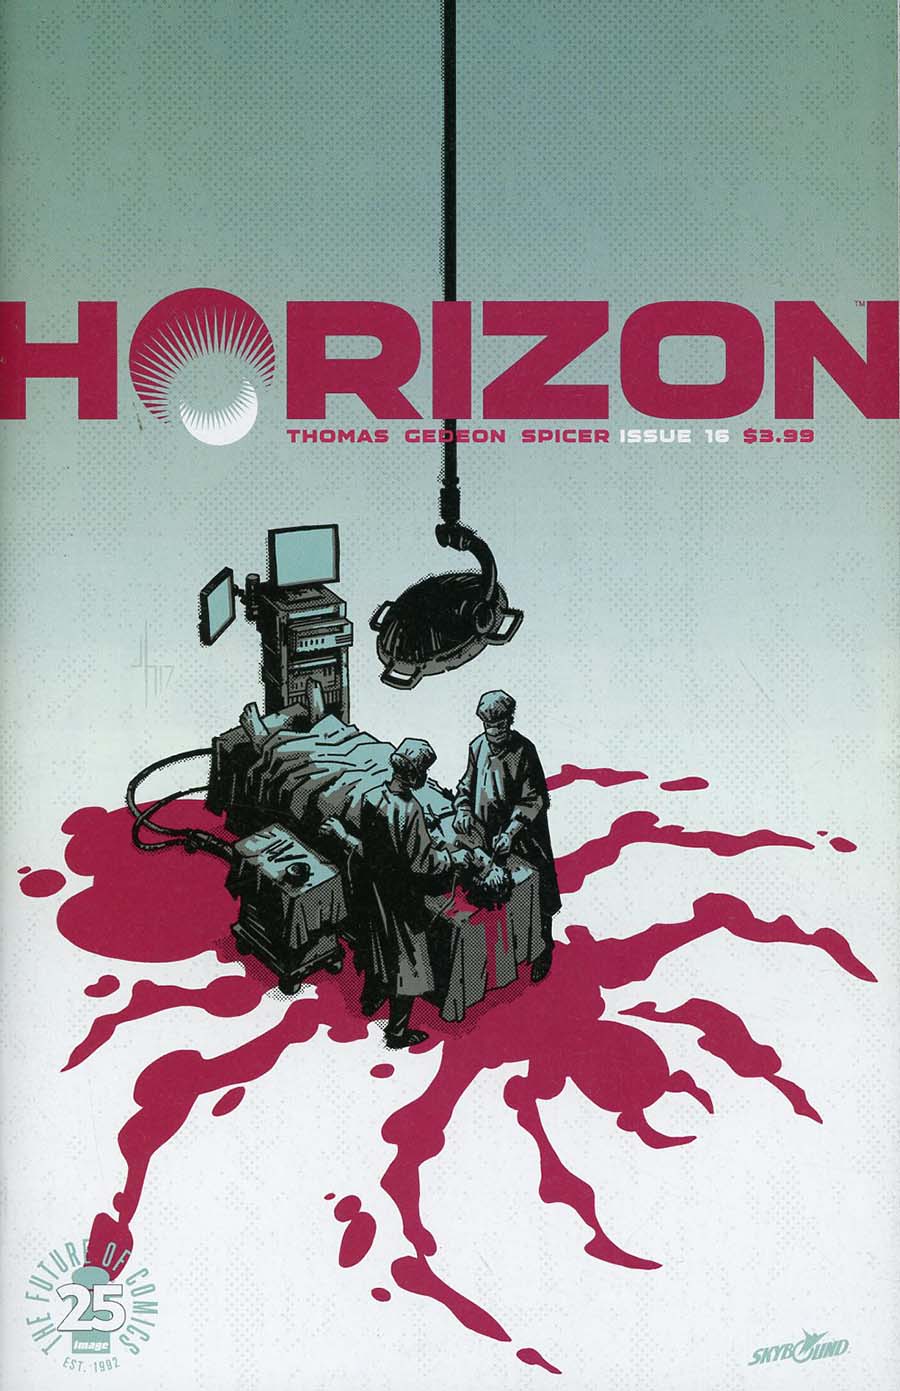 Horizon #16